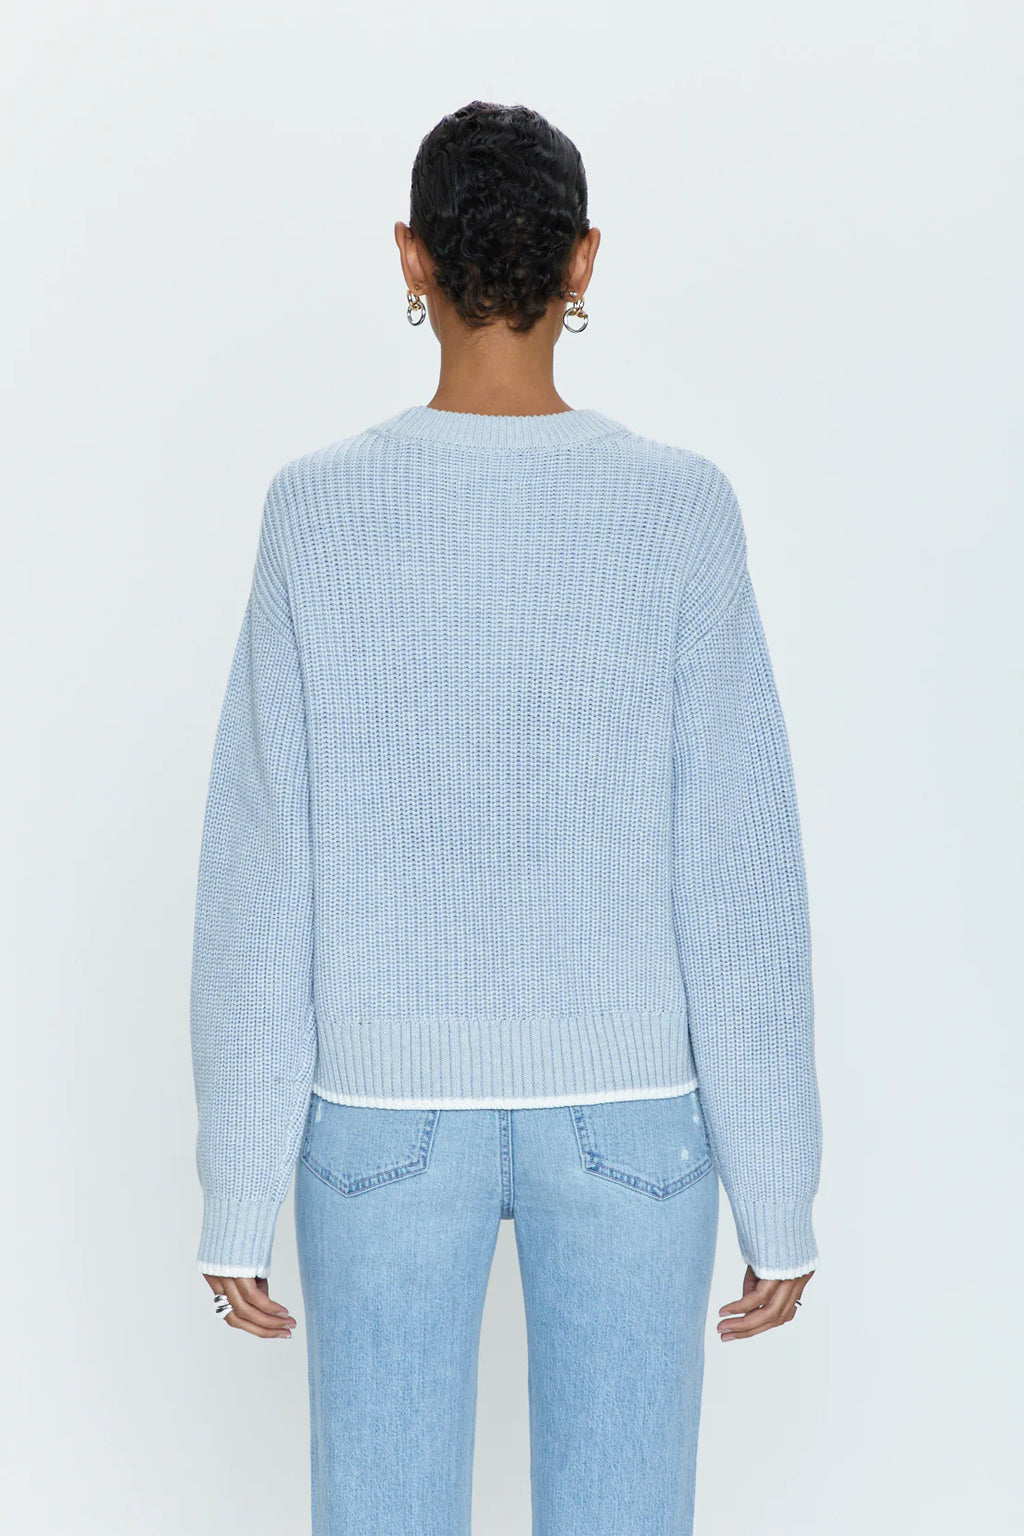 Ren All Day Sweater- Light Blue